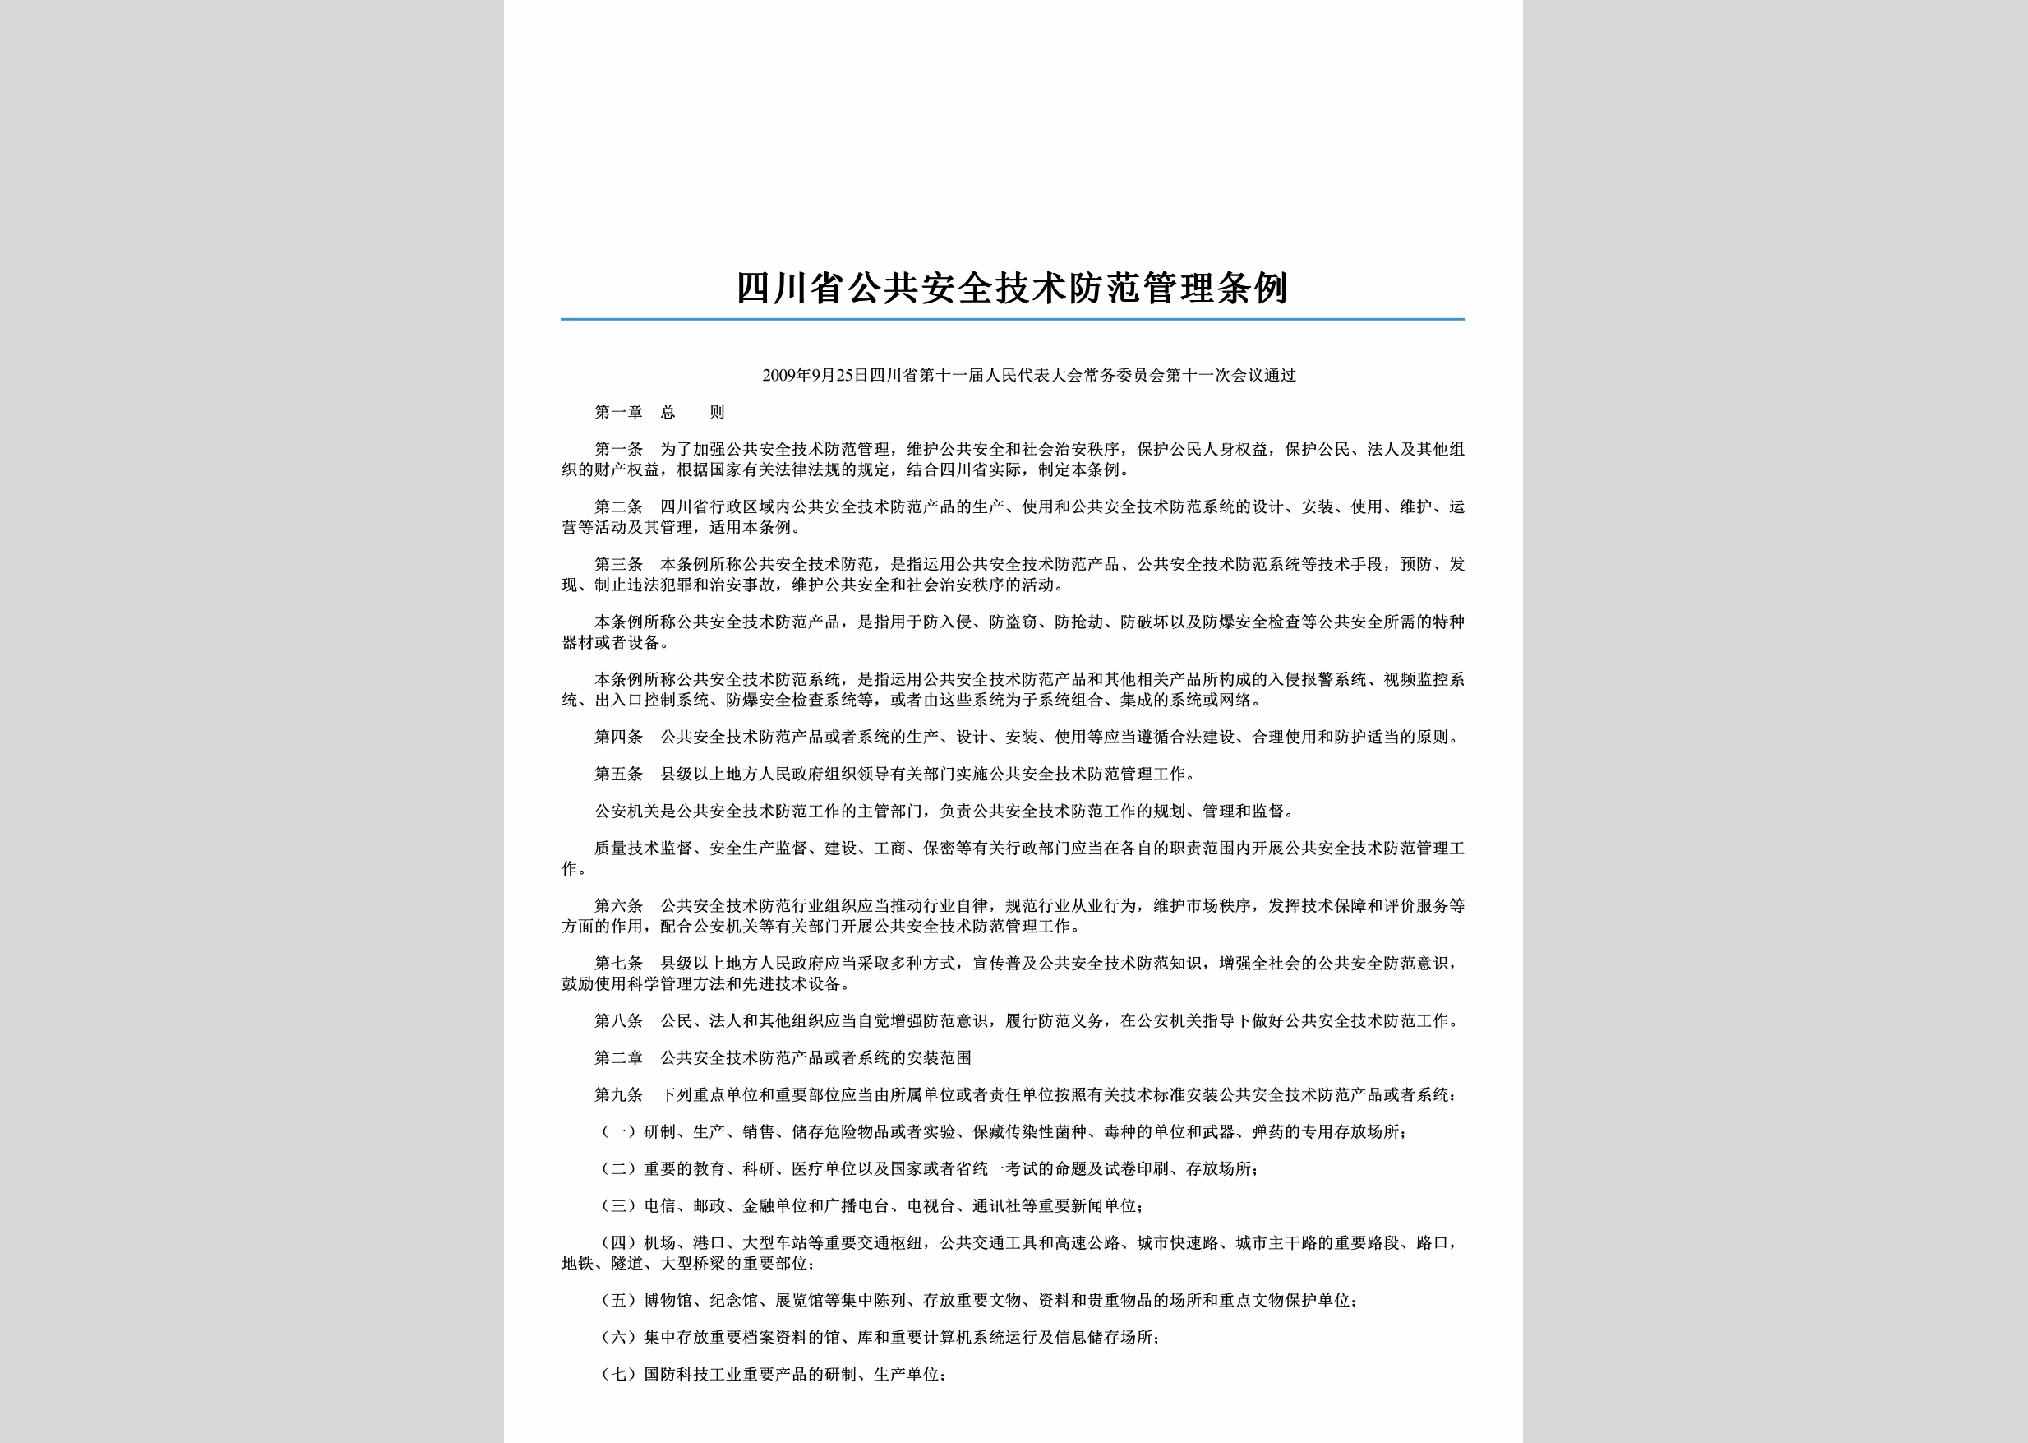 SC-AQJSFFTL-2010：四川省公共安全技术防范管理条例